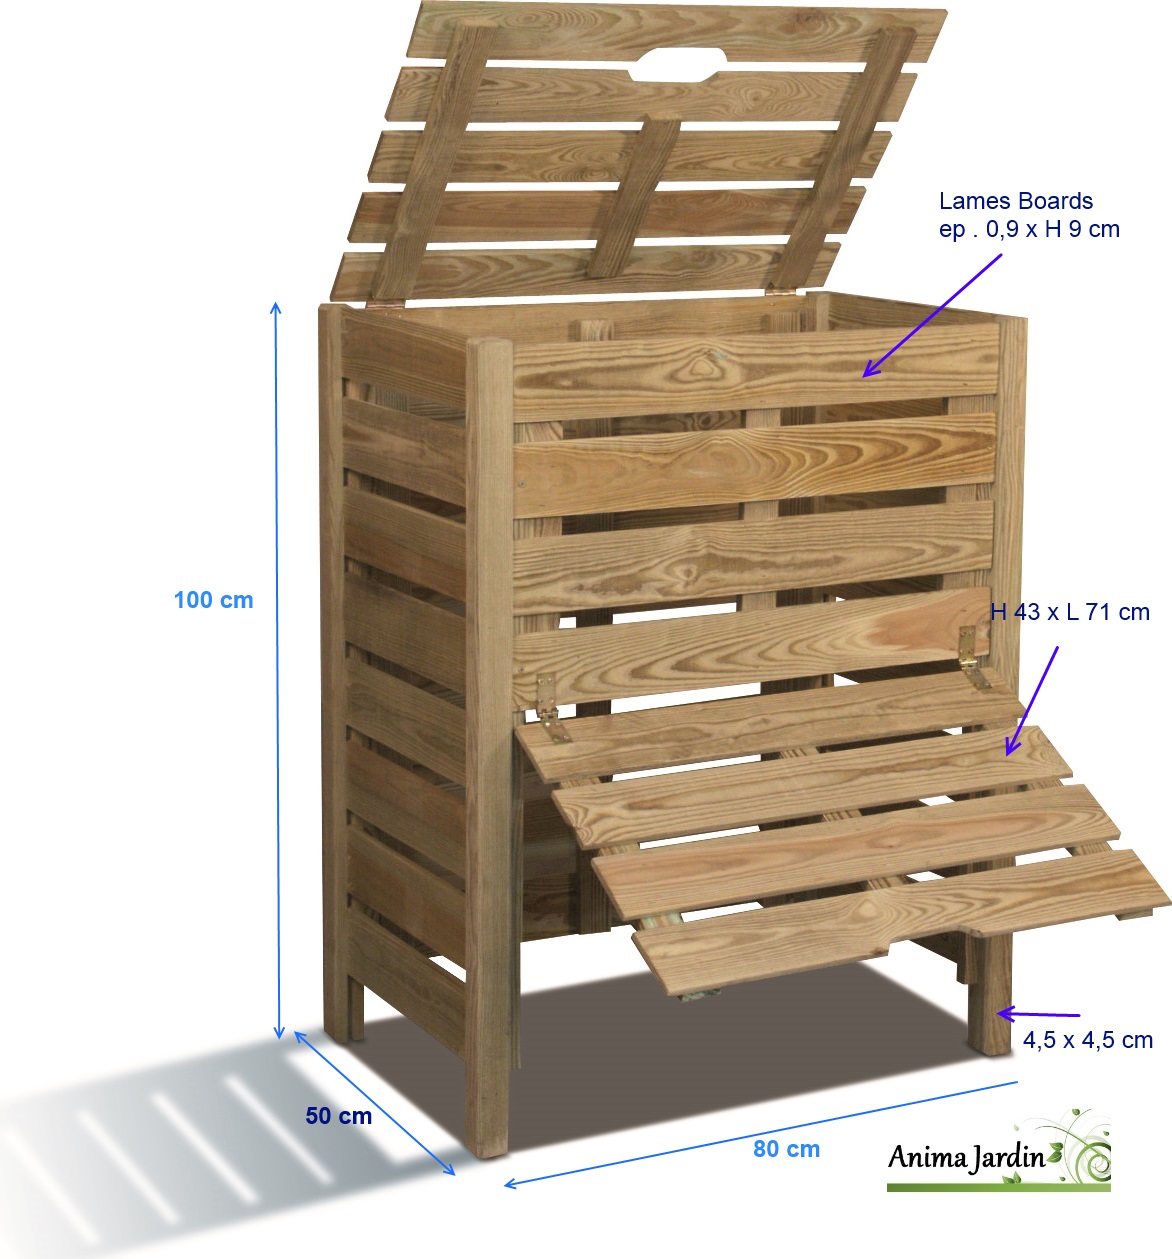 Composteur en bois à accès direct - Boutique du jardin